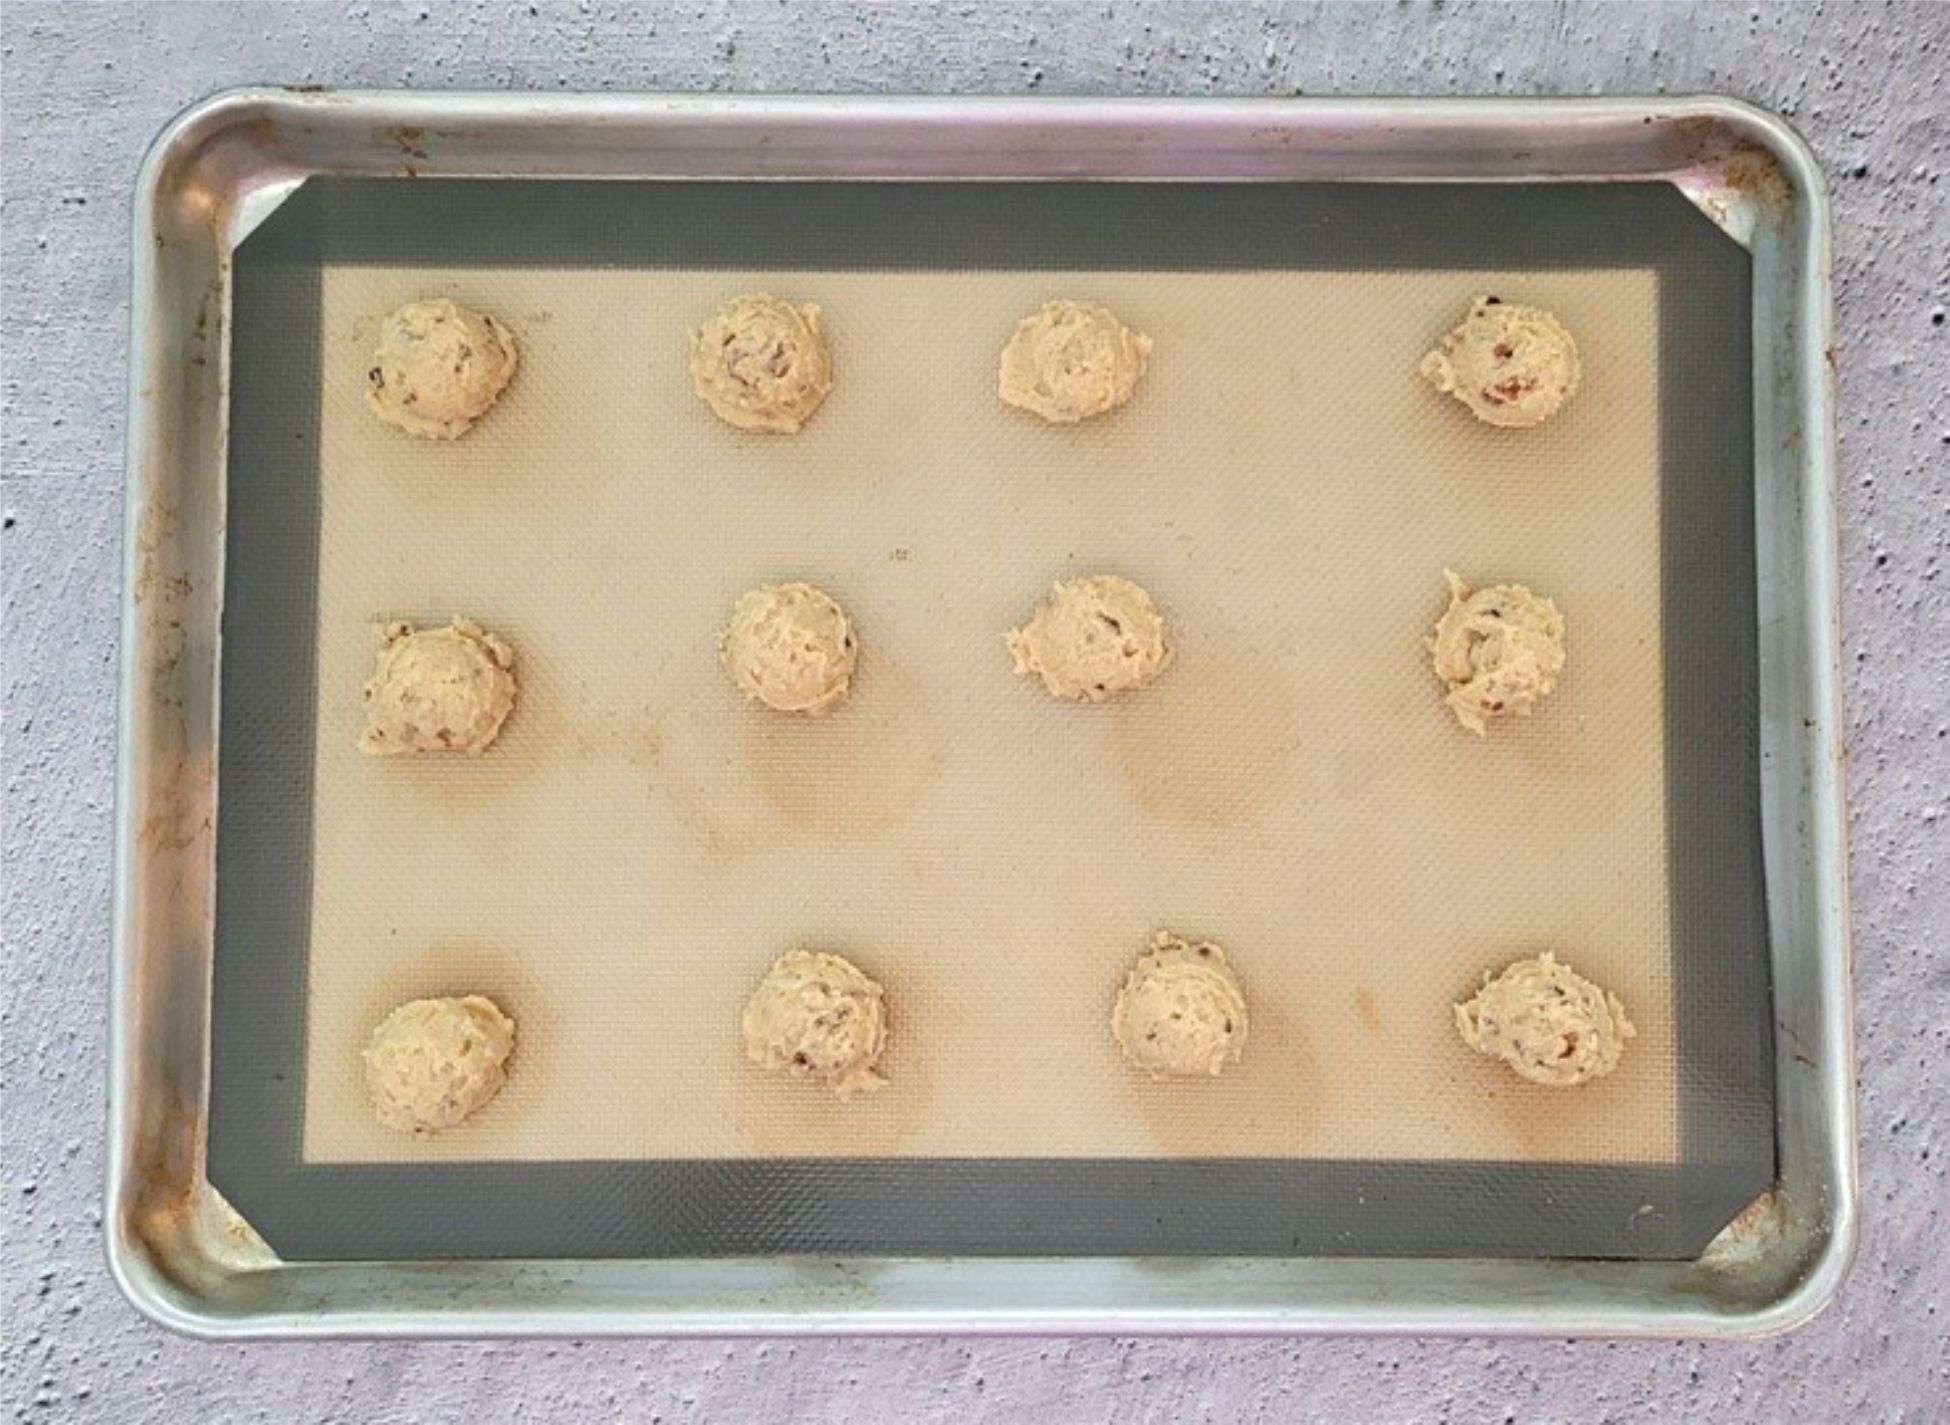 12 pecan praline cookies scooped onto a baking sheet pan